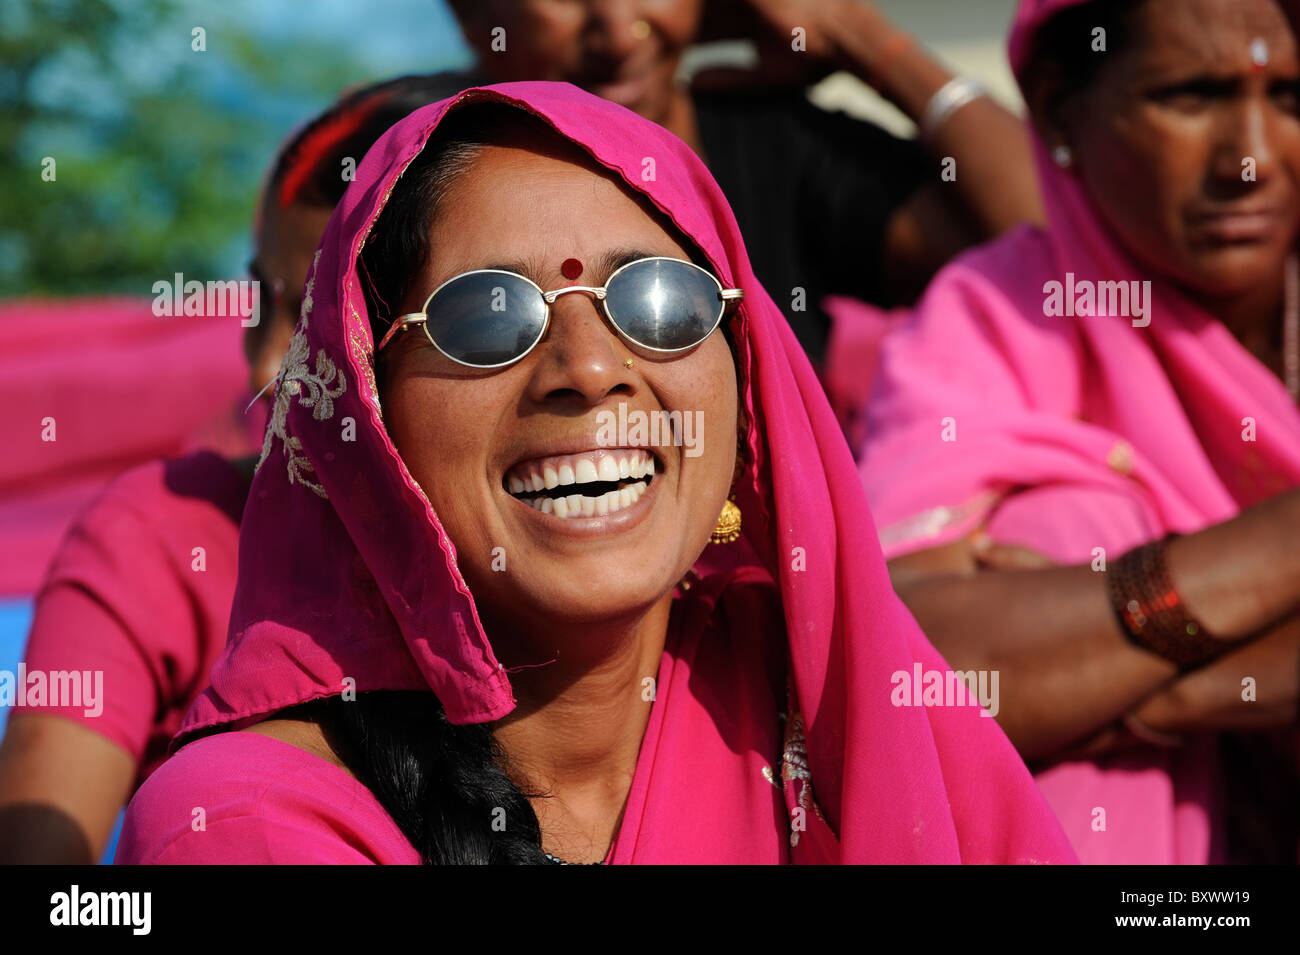 Indien bis Stadt Banda, Rallye Frauen Bewegung Gulabi Bande des Führers Sampat Pal Devi, kämpfen die Frauen in rosa Sari gegen Gewalt gegen Frauen Stockfoto